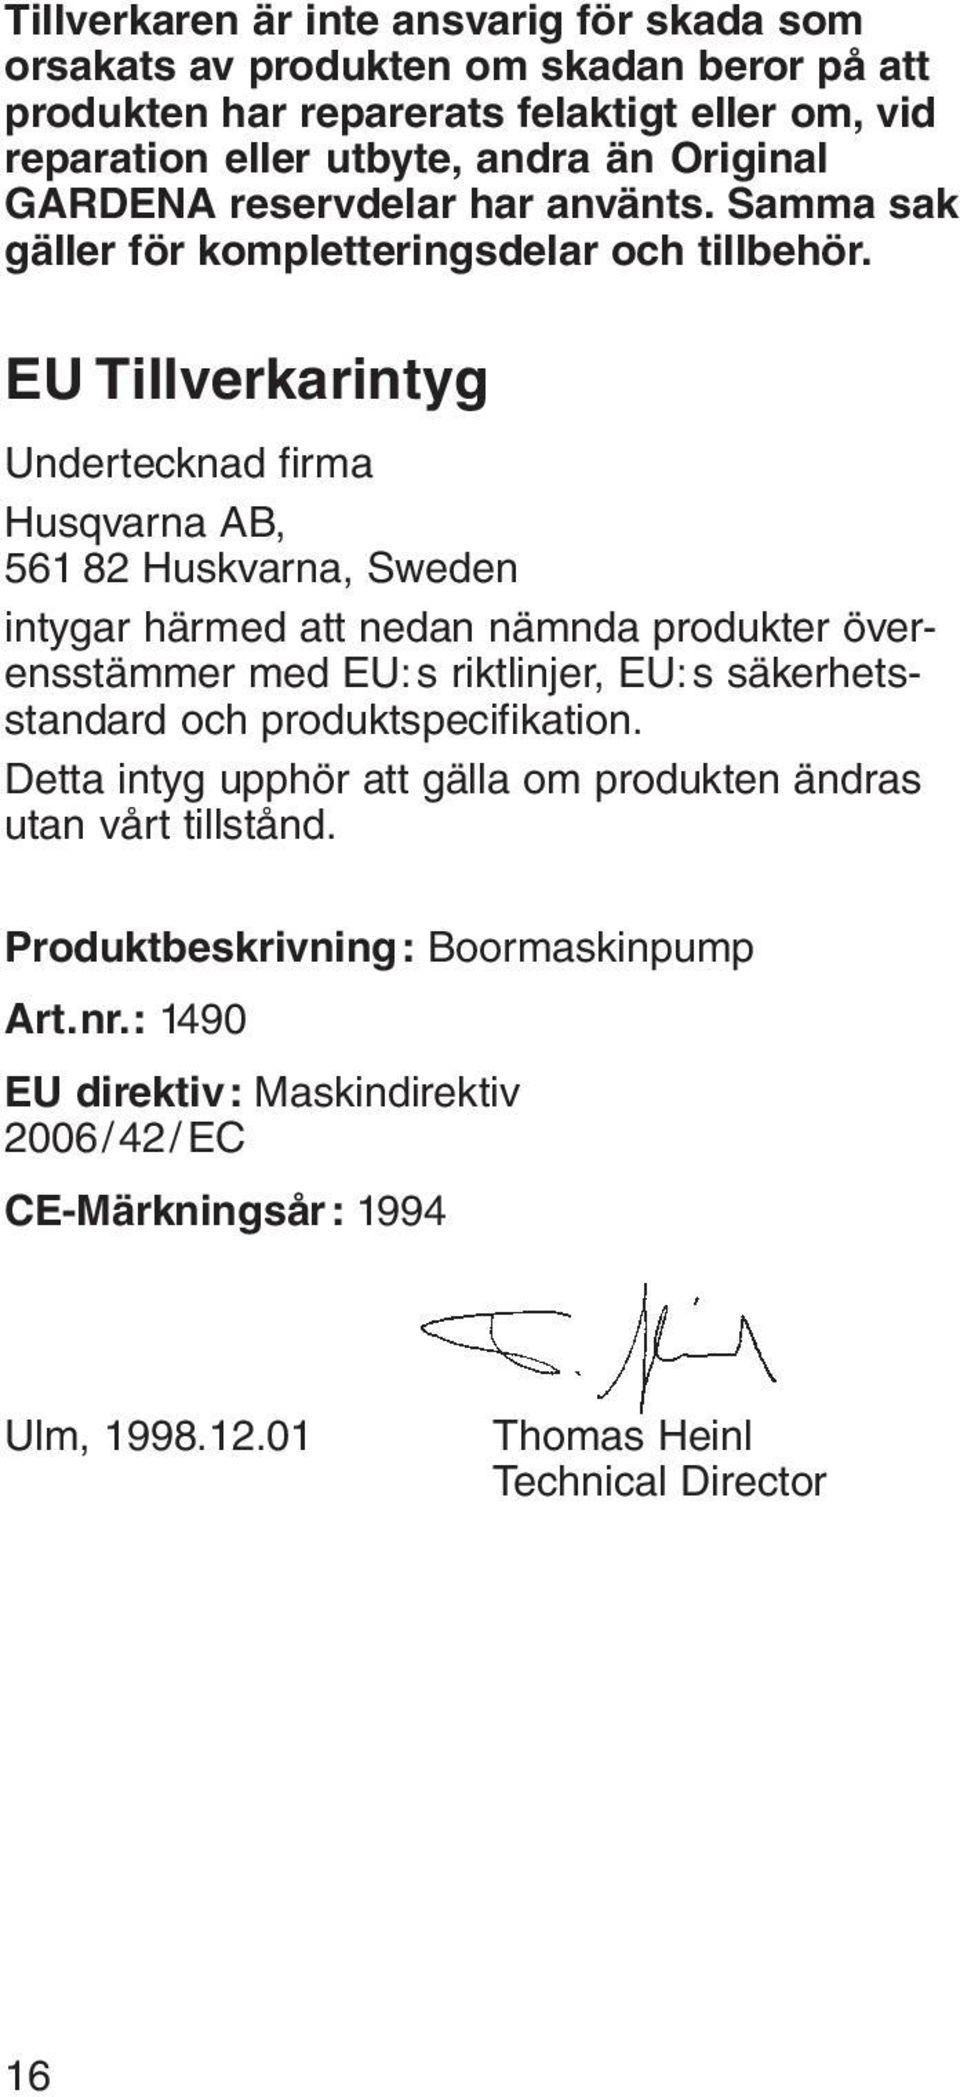 EU Tillverkarintyg Undertecknad firma Husqvarna AB, 561 82 Huskvarna, Sweden intygar härmed att nedan nämnda produkter överensstämmer med EU:s riktlinjer, EU:s